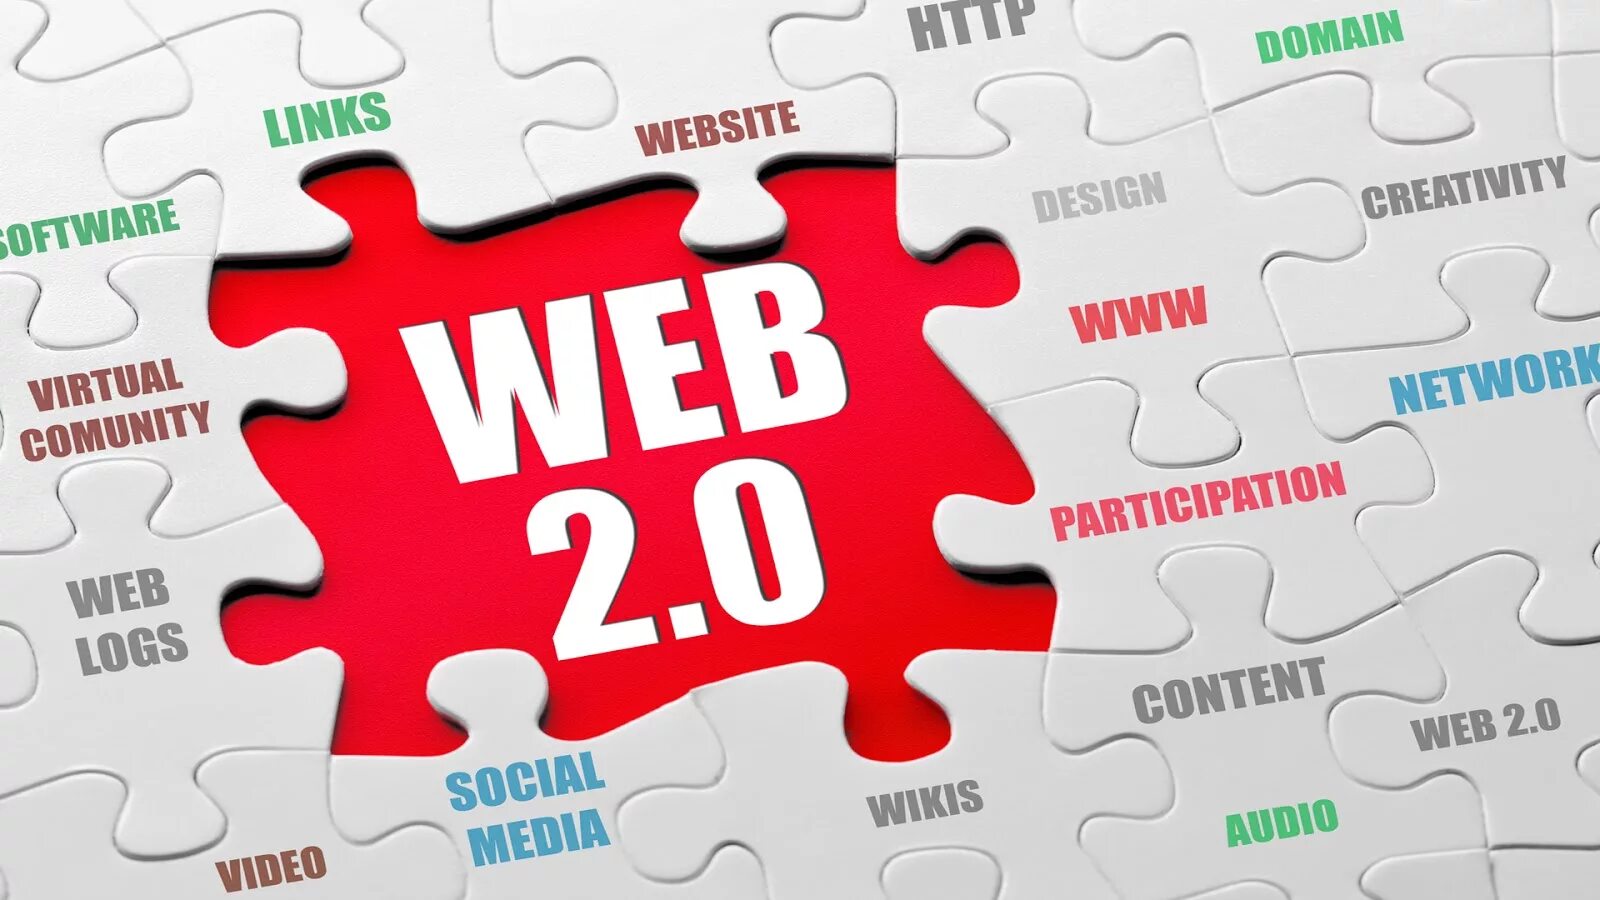 Сайт 0 12. Web 2.0. Концепция web 2.0. Web 2.0 картинки. Социальные сервисы web 2.0.